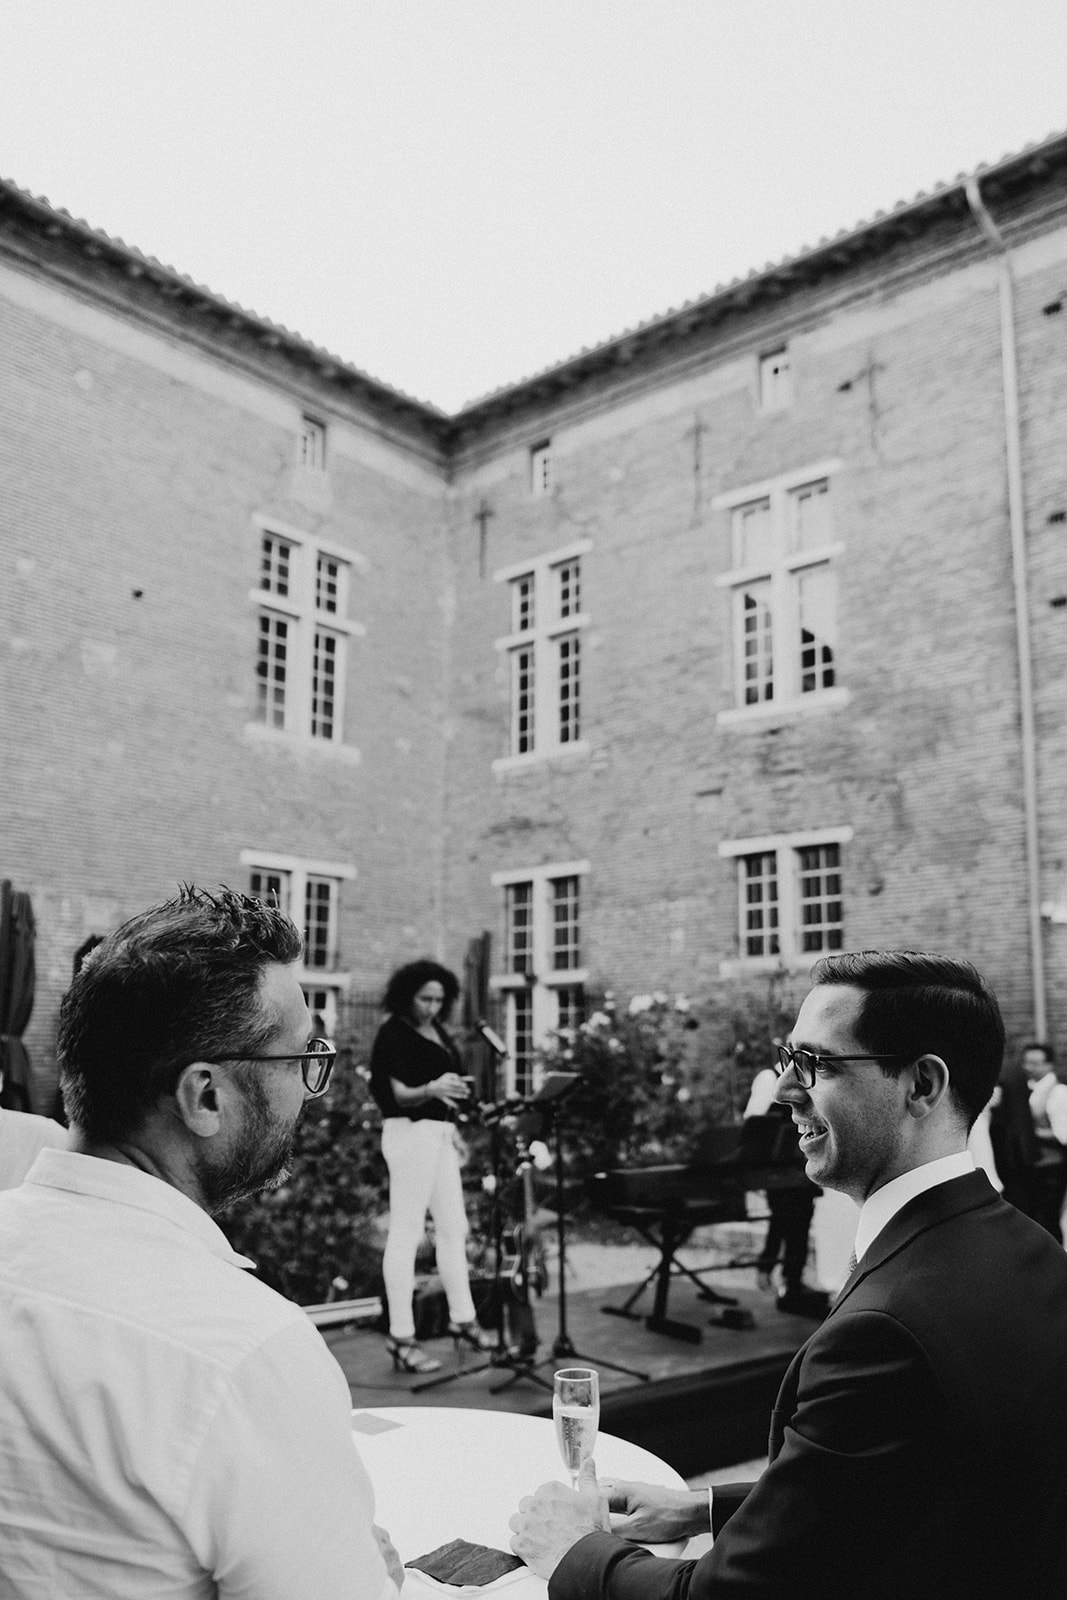 Mariage au Chateau de Launac - Photographe Thibaut Deligey